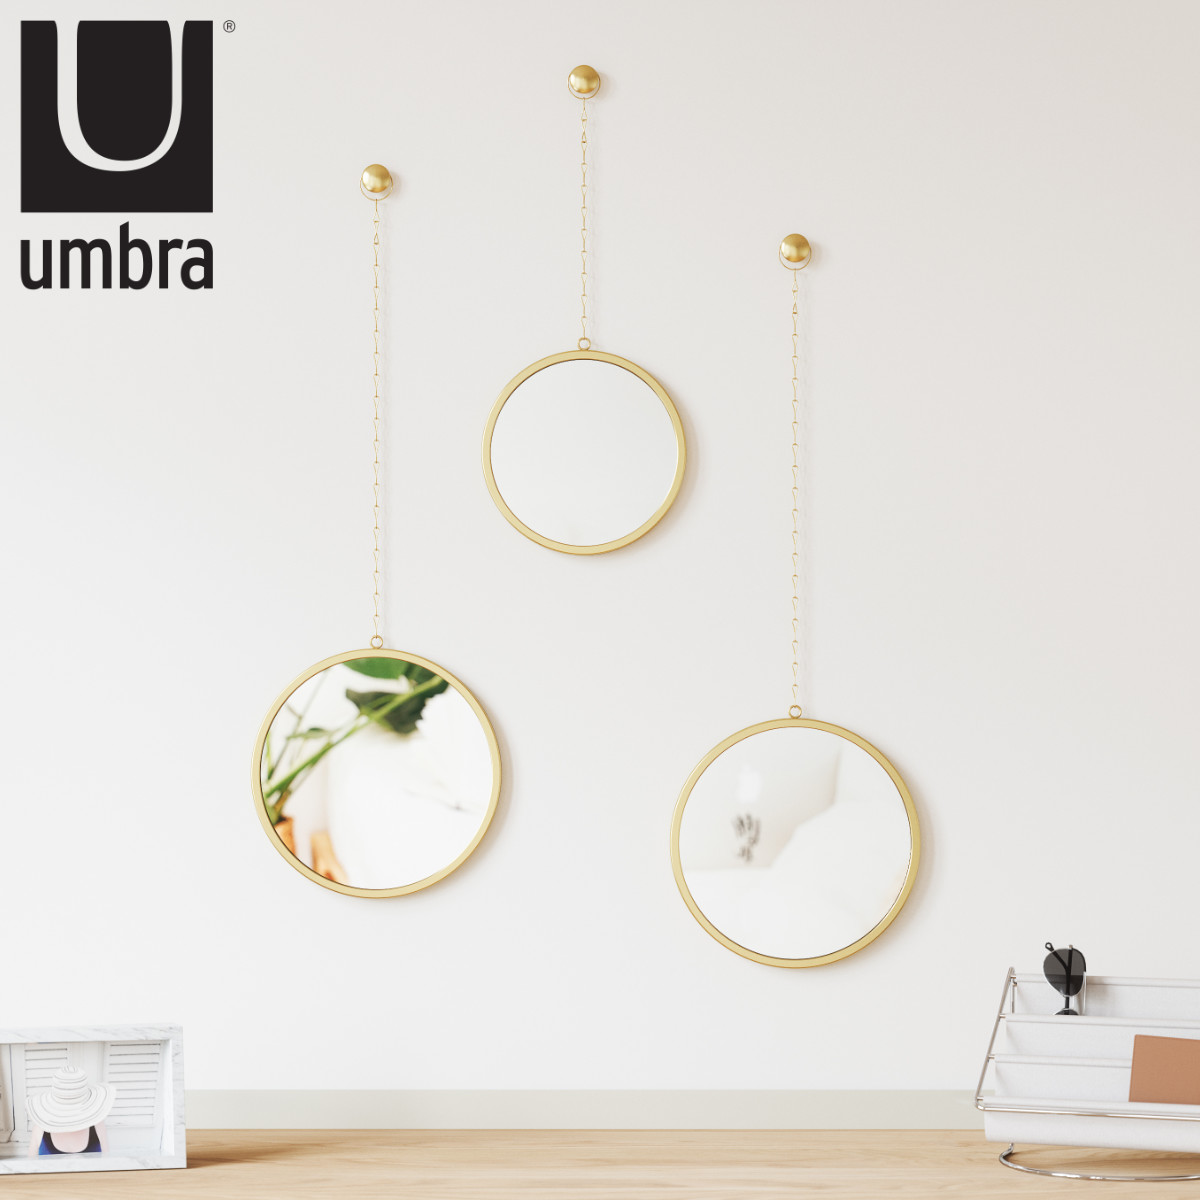 umbra ディマ ラウンドミラー 3pcsブラス （ アンブラ ミラー 壁掛け 鏡 ウォールミラー かがみ 丸ミラー 壁飾り 3個セット チェーン イ